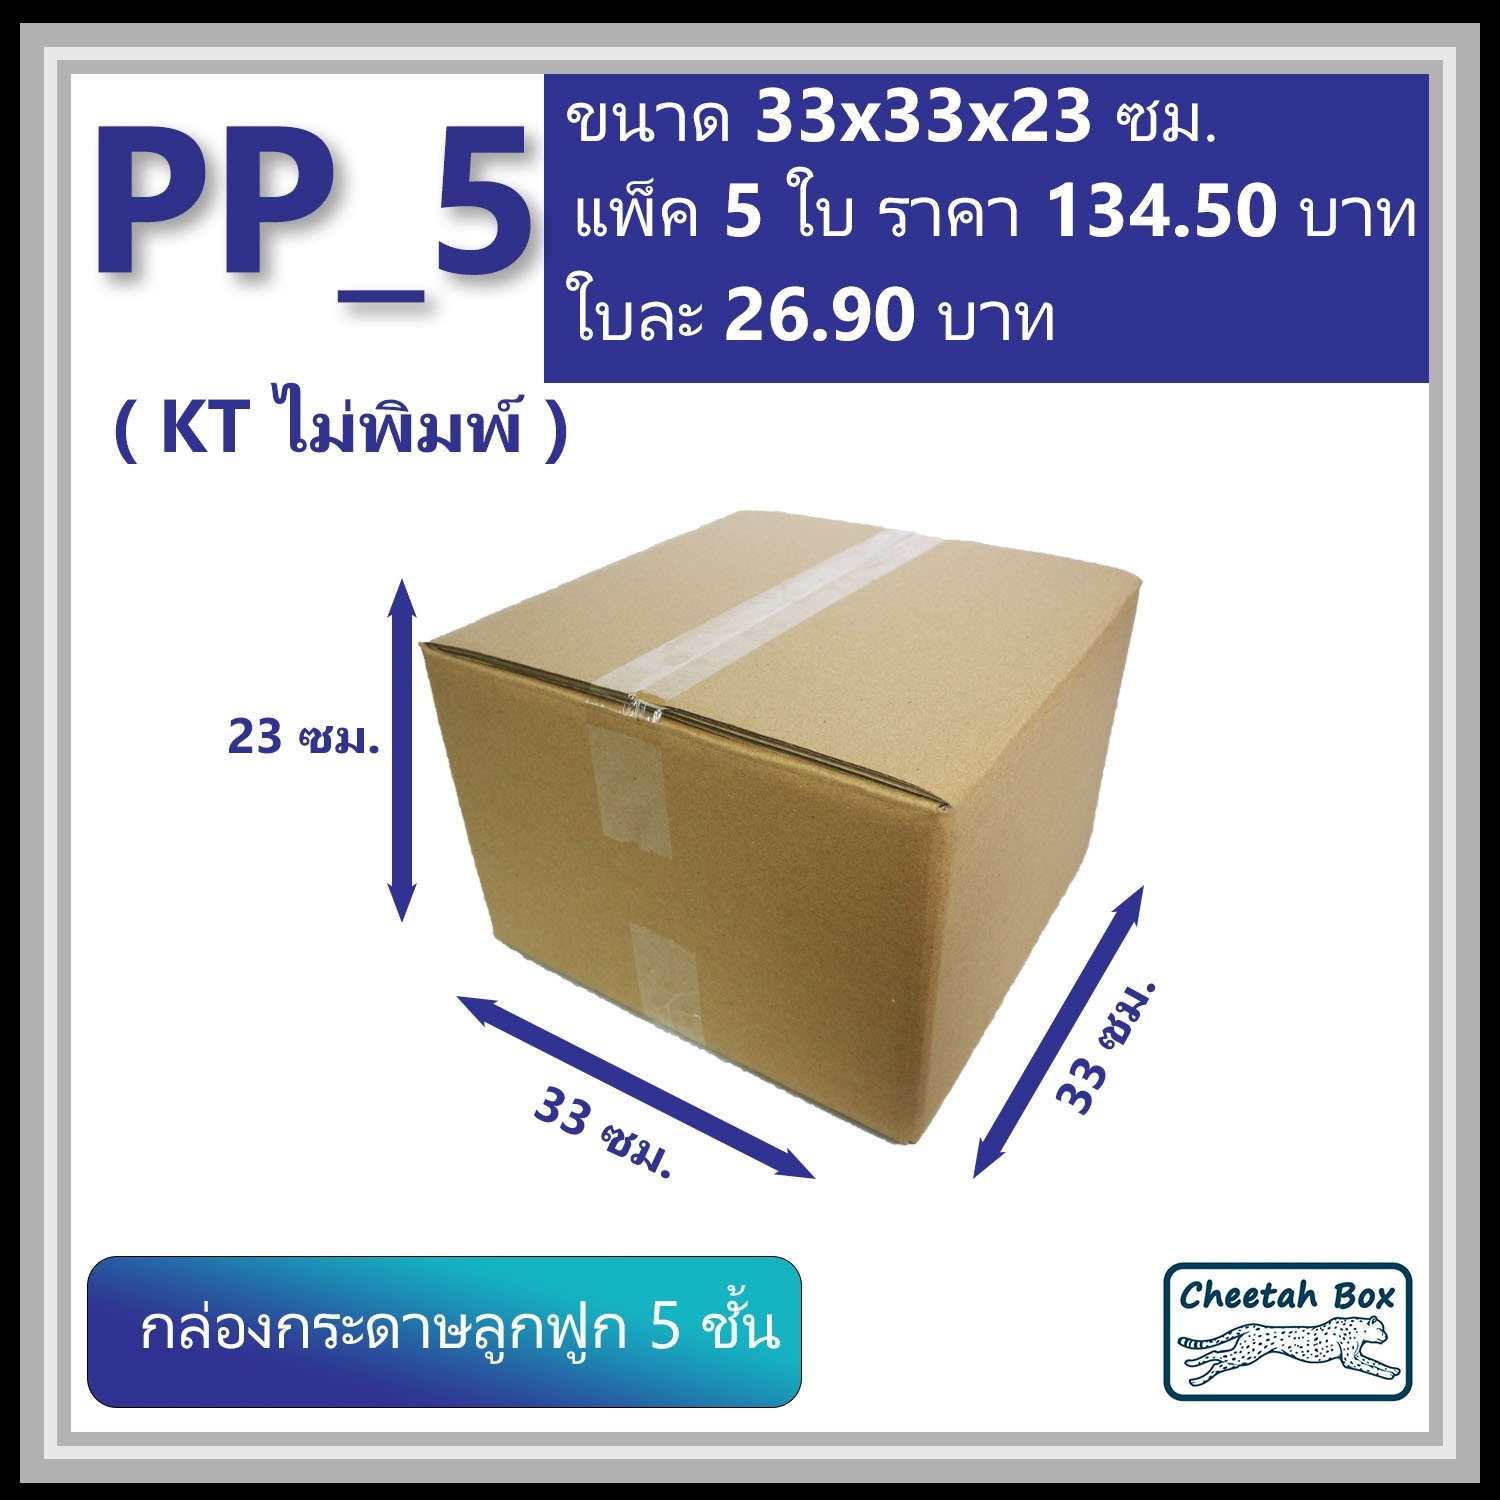 กล่องพัสดุ PP_5 (KT150) ไม่พิมพ์ (Post Box) ลูกฟูก 5 ชั้น ขนาด 33W x 33L x 23H cm.